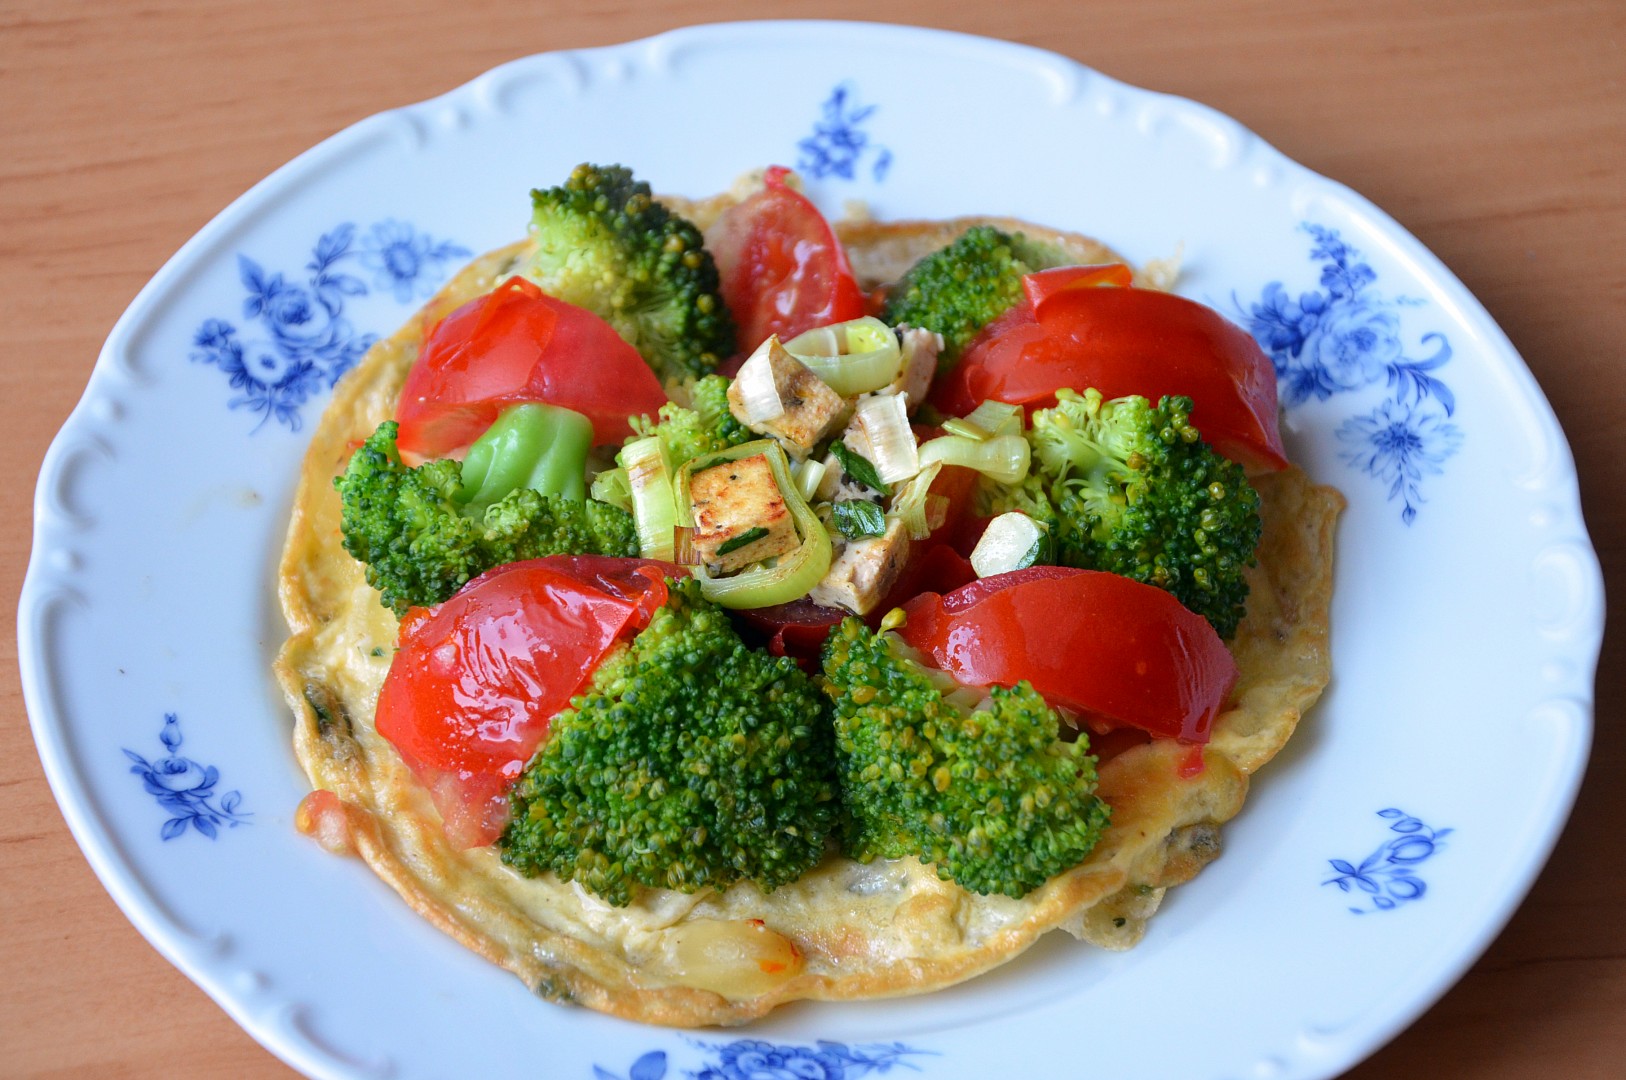 Tvarůžková omeleta se zeleninou a tofu